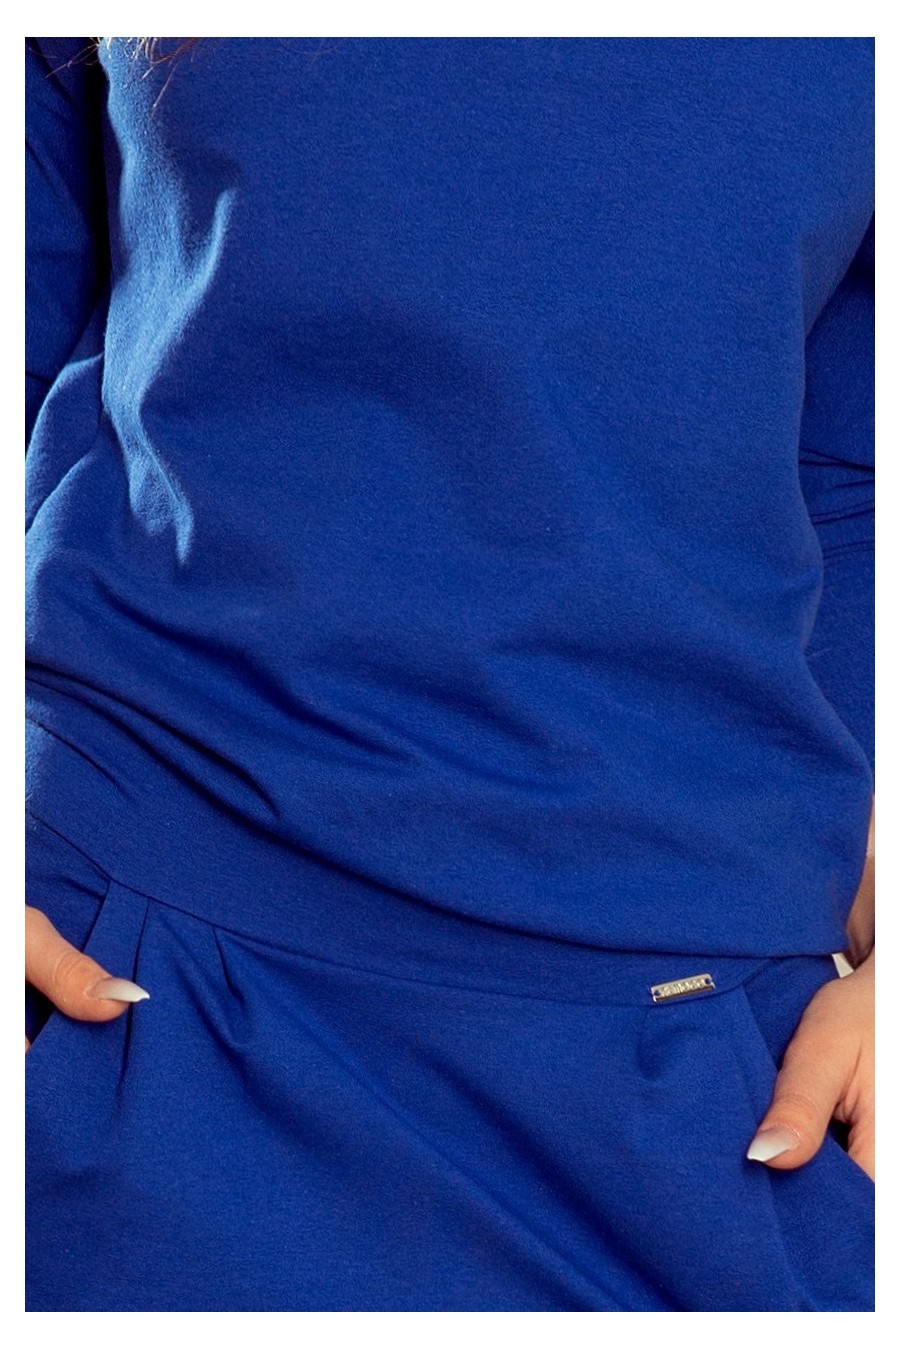 189-2 Sportovní šaty s odštěpem na zádech - tmavě modrá